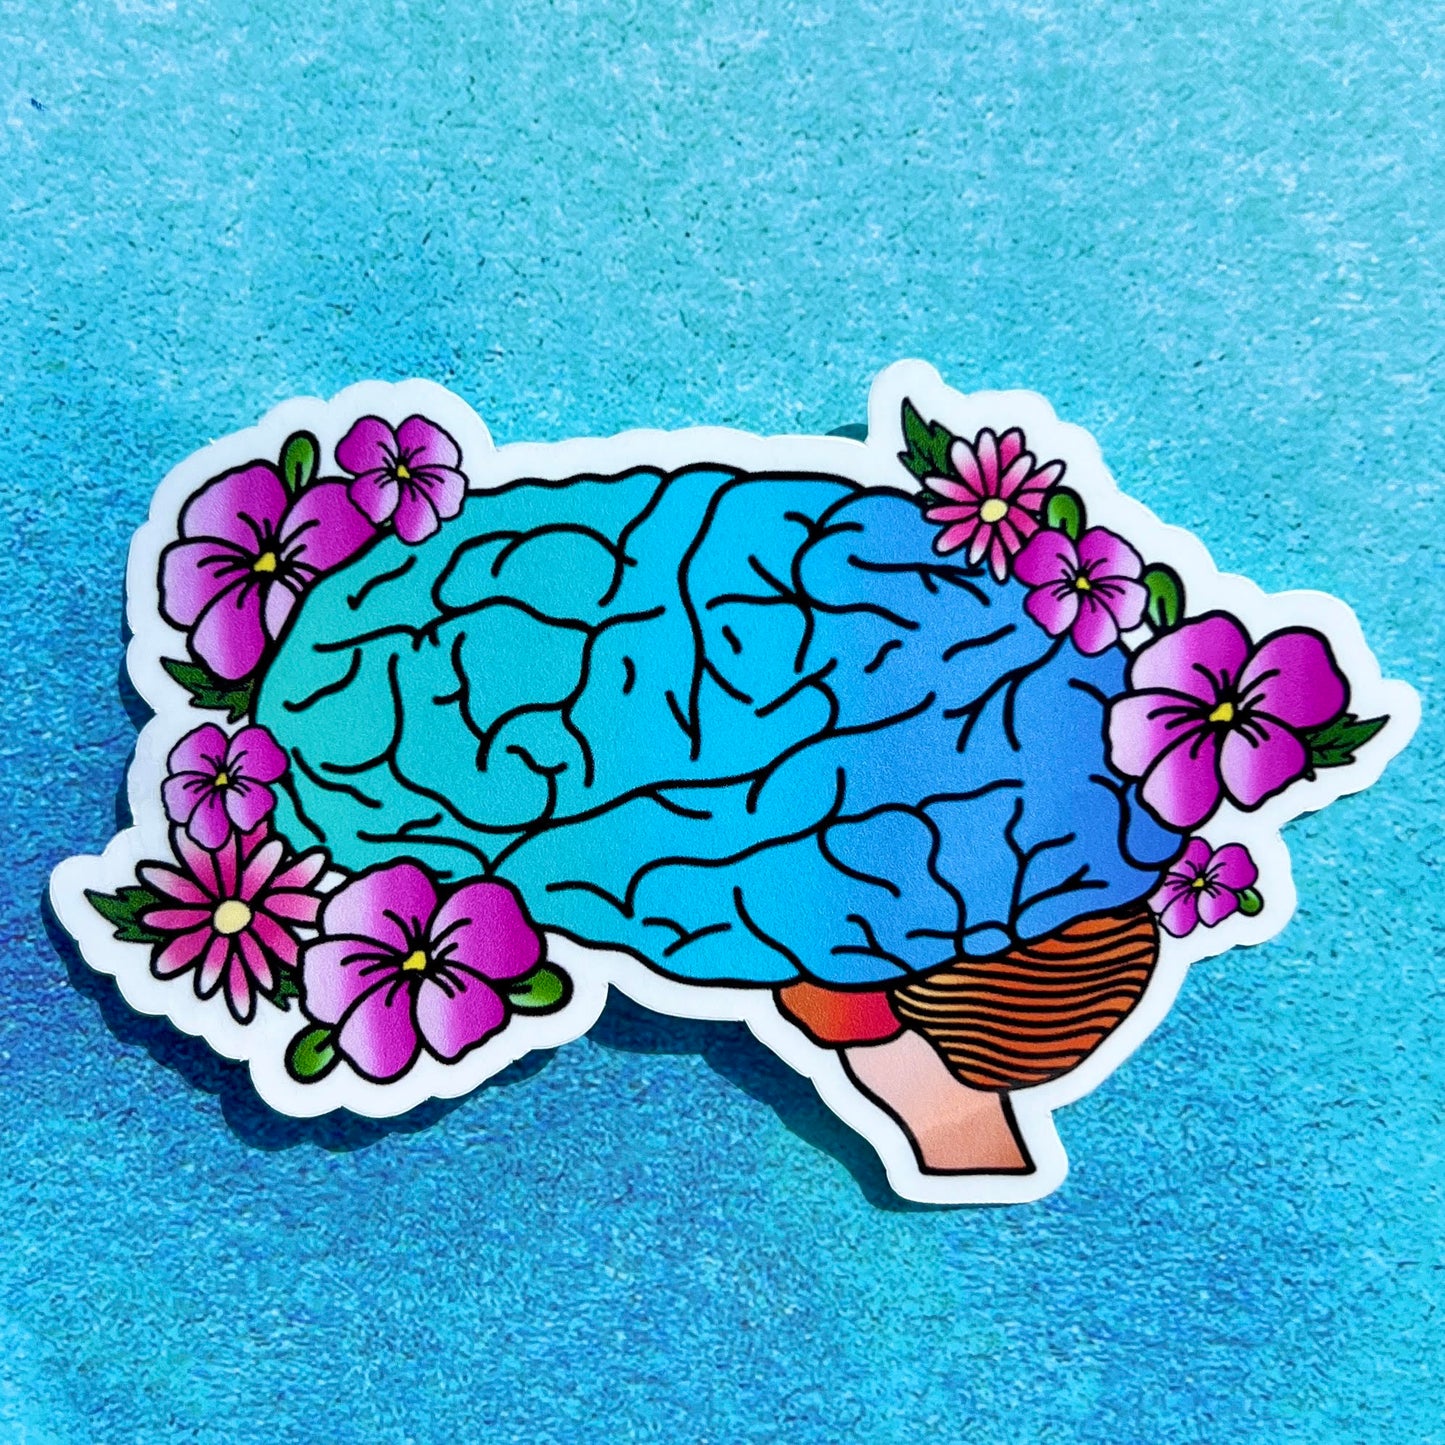 Floral brain sticker